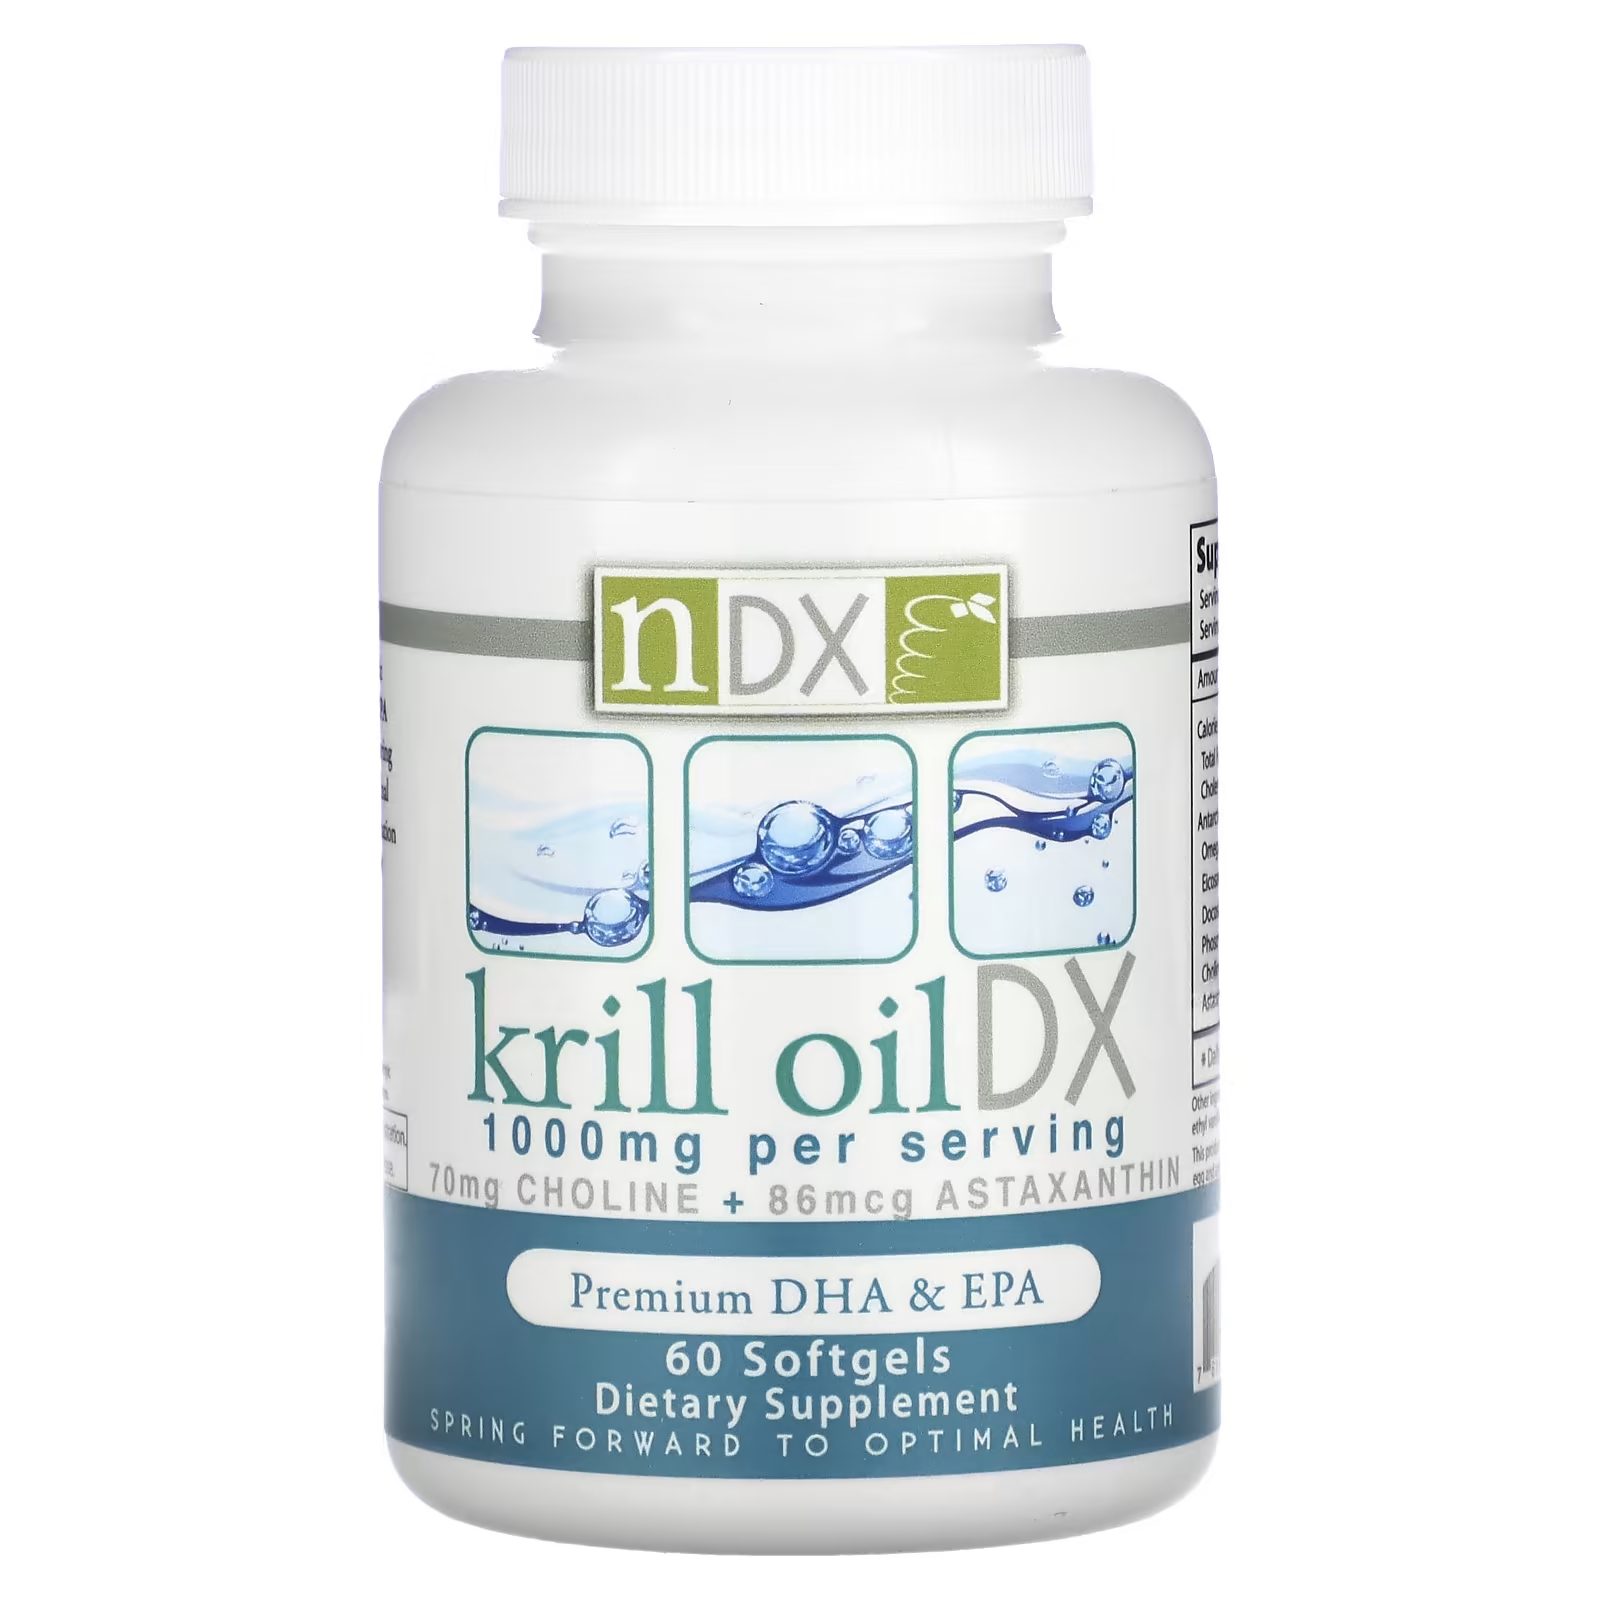 Пищевая добавка Natural Dynamix Krill Oil DX Premium DHA и EPA 1000 мг, 60 мягких таблеток